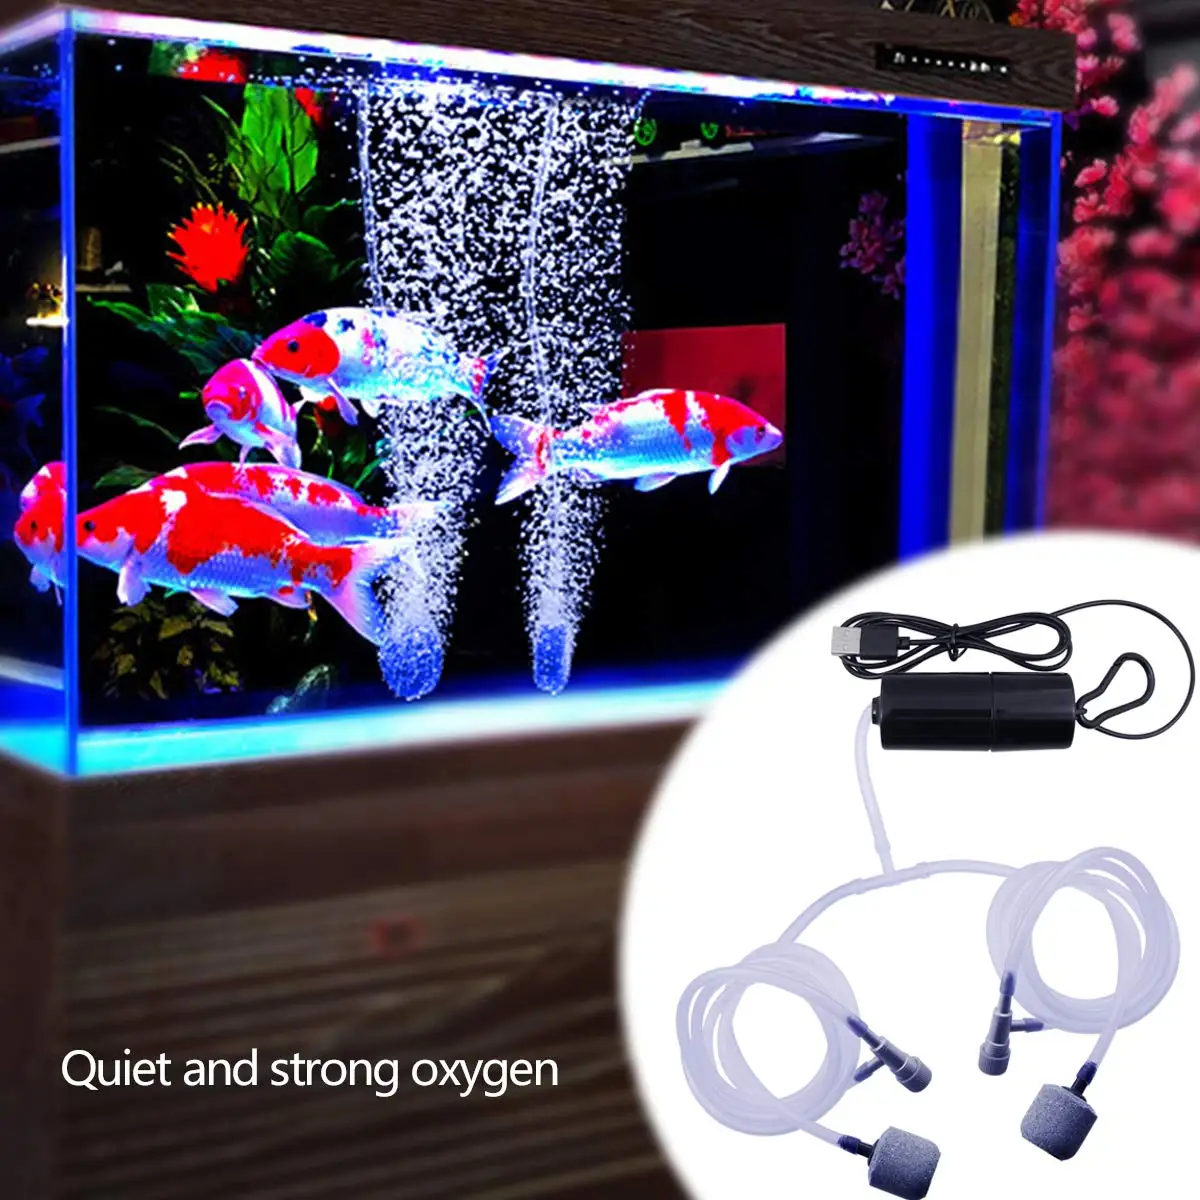 

5v USB Aquarium Air Pump Portable Fish Tank Air Pump Silent Air Compressor Aerator Quiet Oxygen Pump